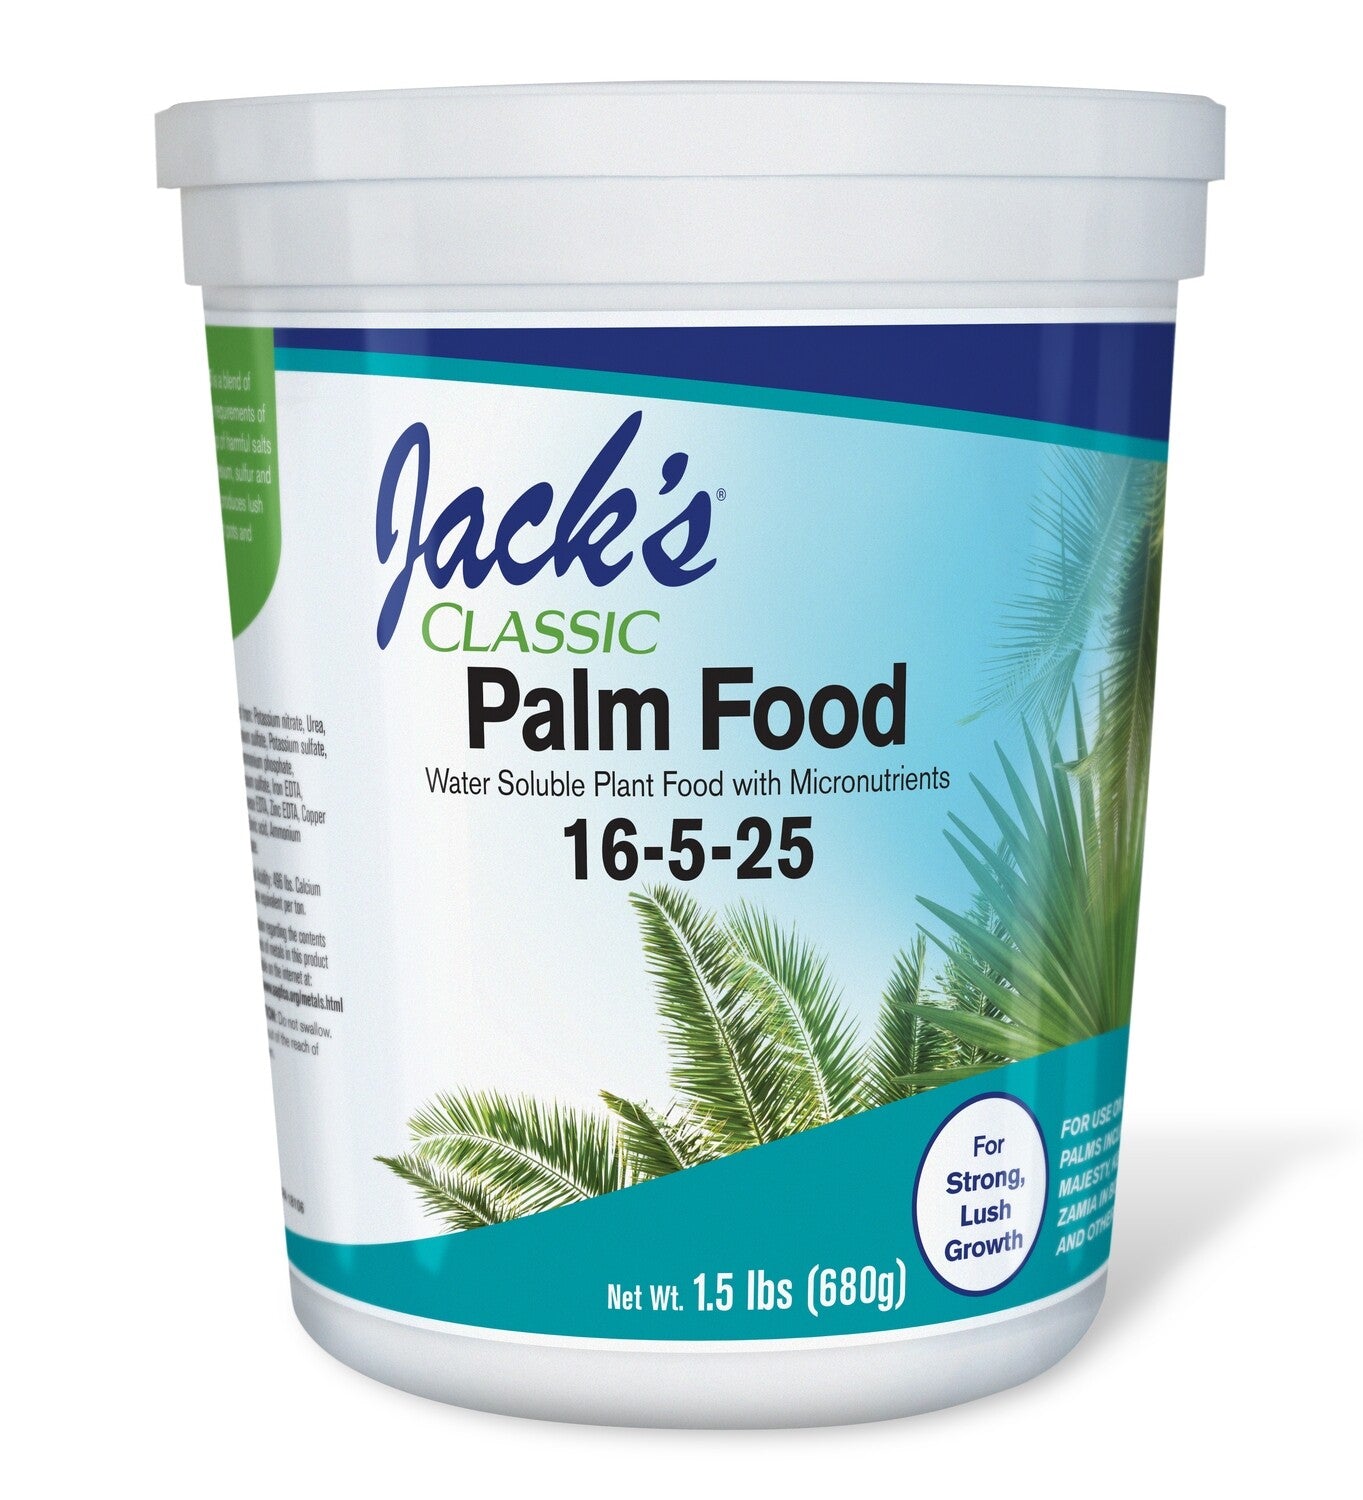 Jack's 经典棕榈食品 1.5 磅 (16-5-25)